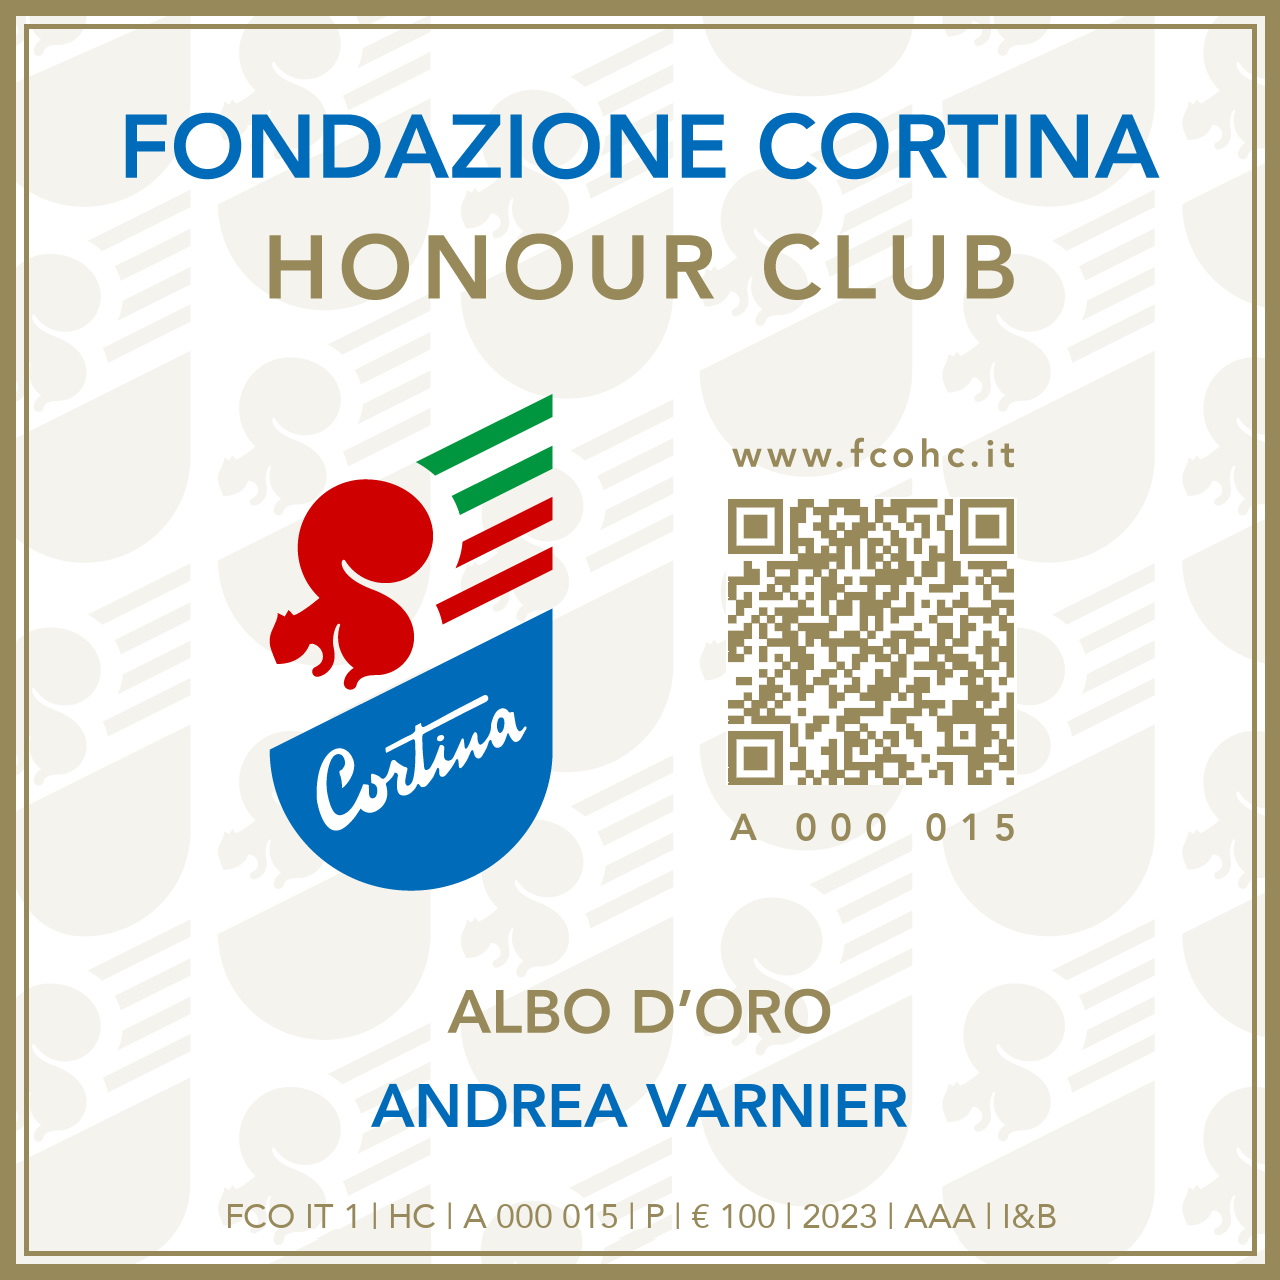 Fondazione Cortina Honour Club - Token Id A 000 015 - ANDREA VARNIER